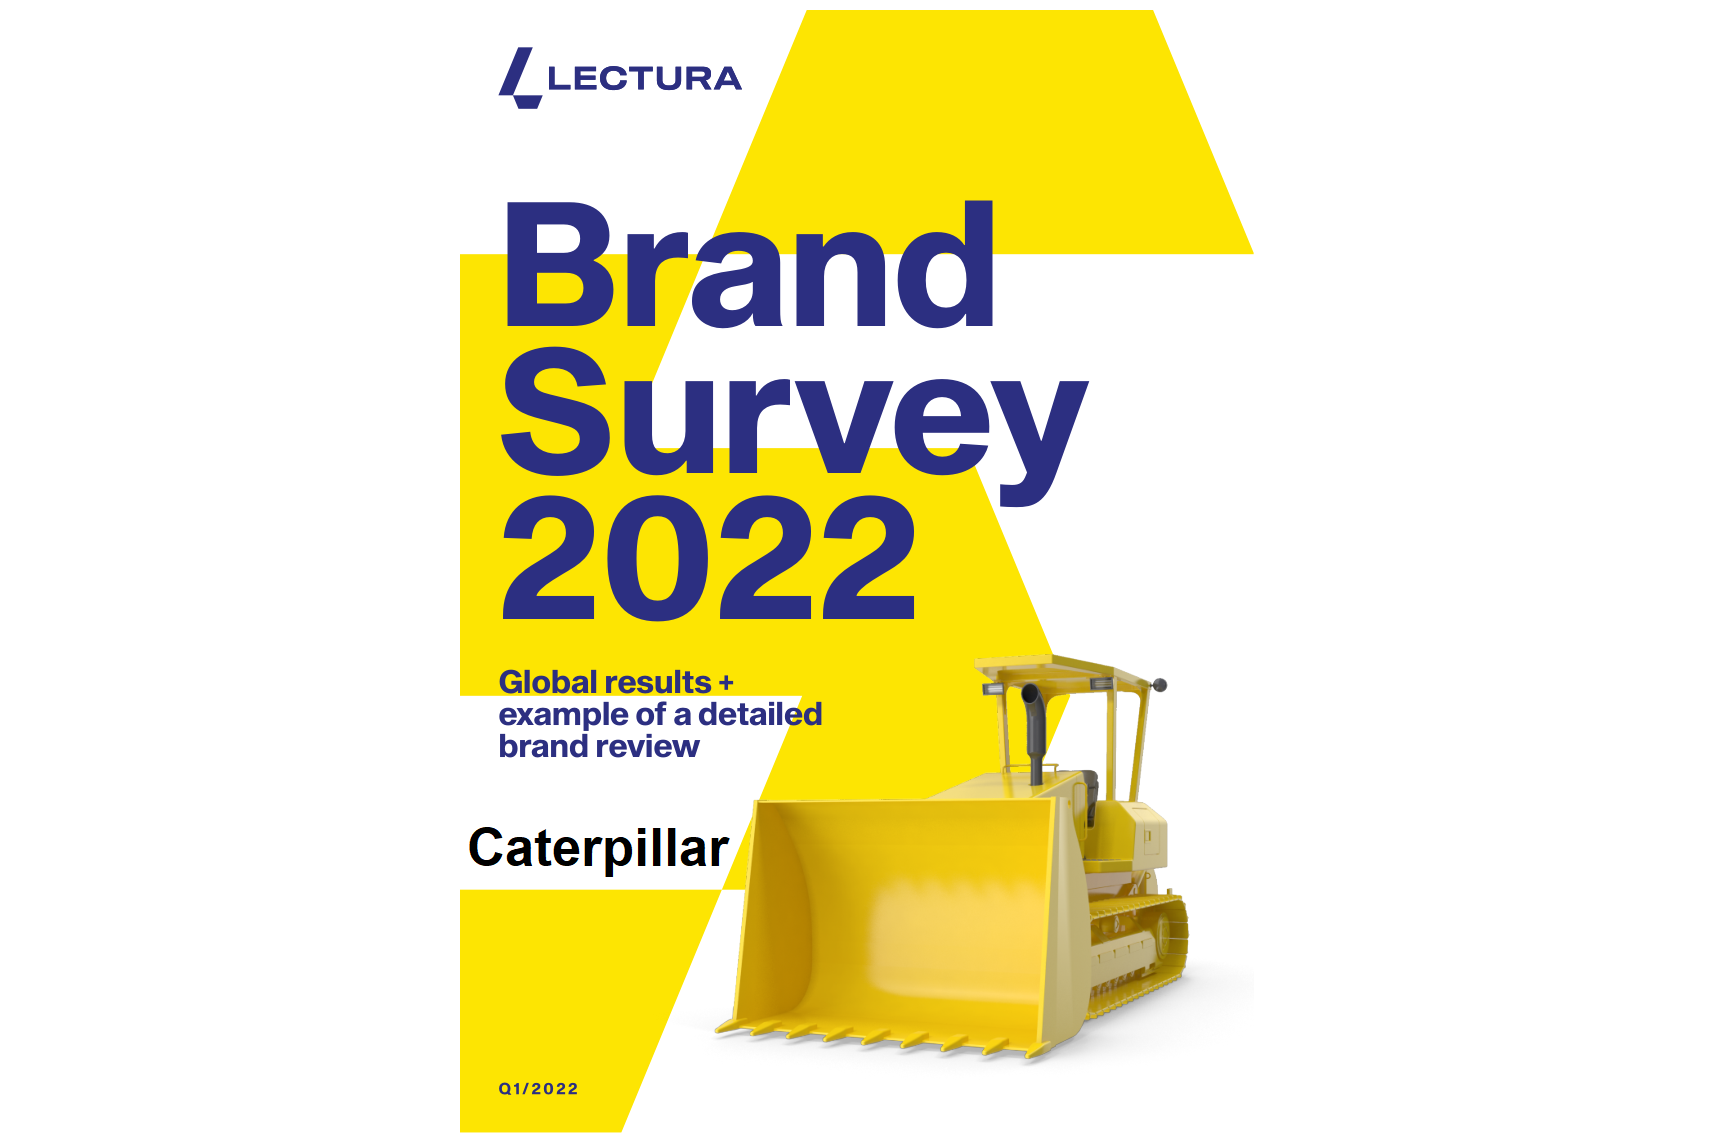 BrandSurvey 2022 Sneak Peak: Caterpillar